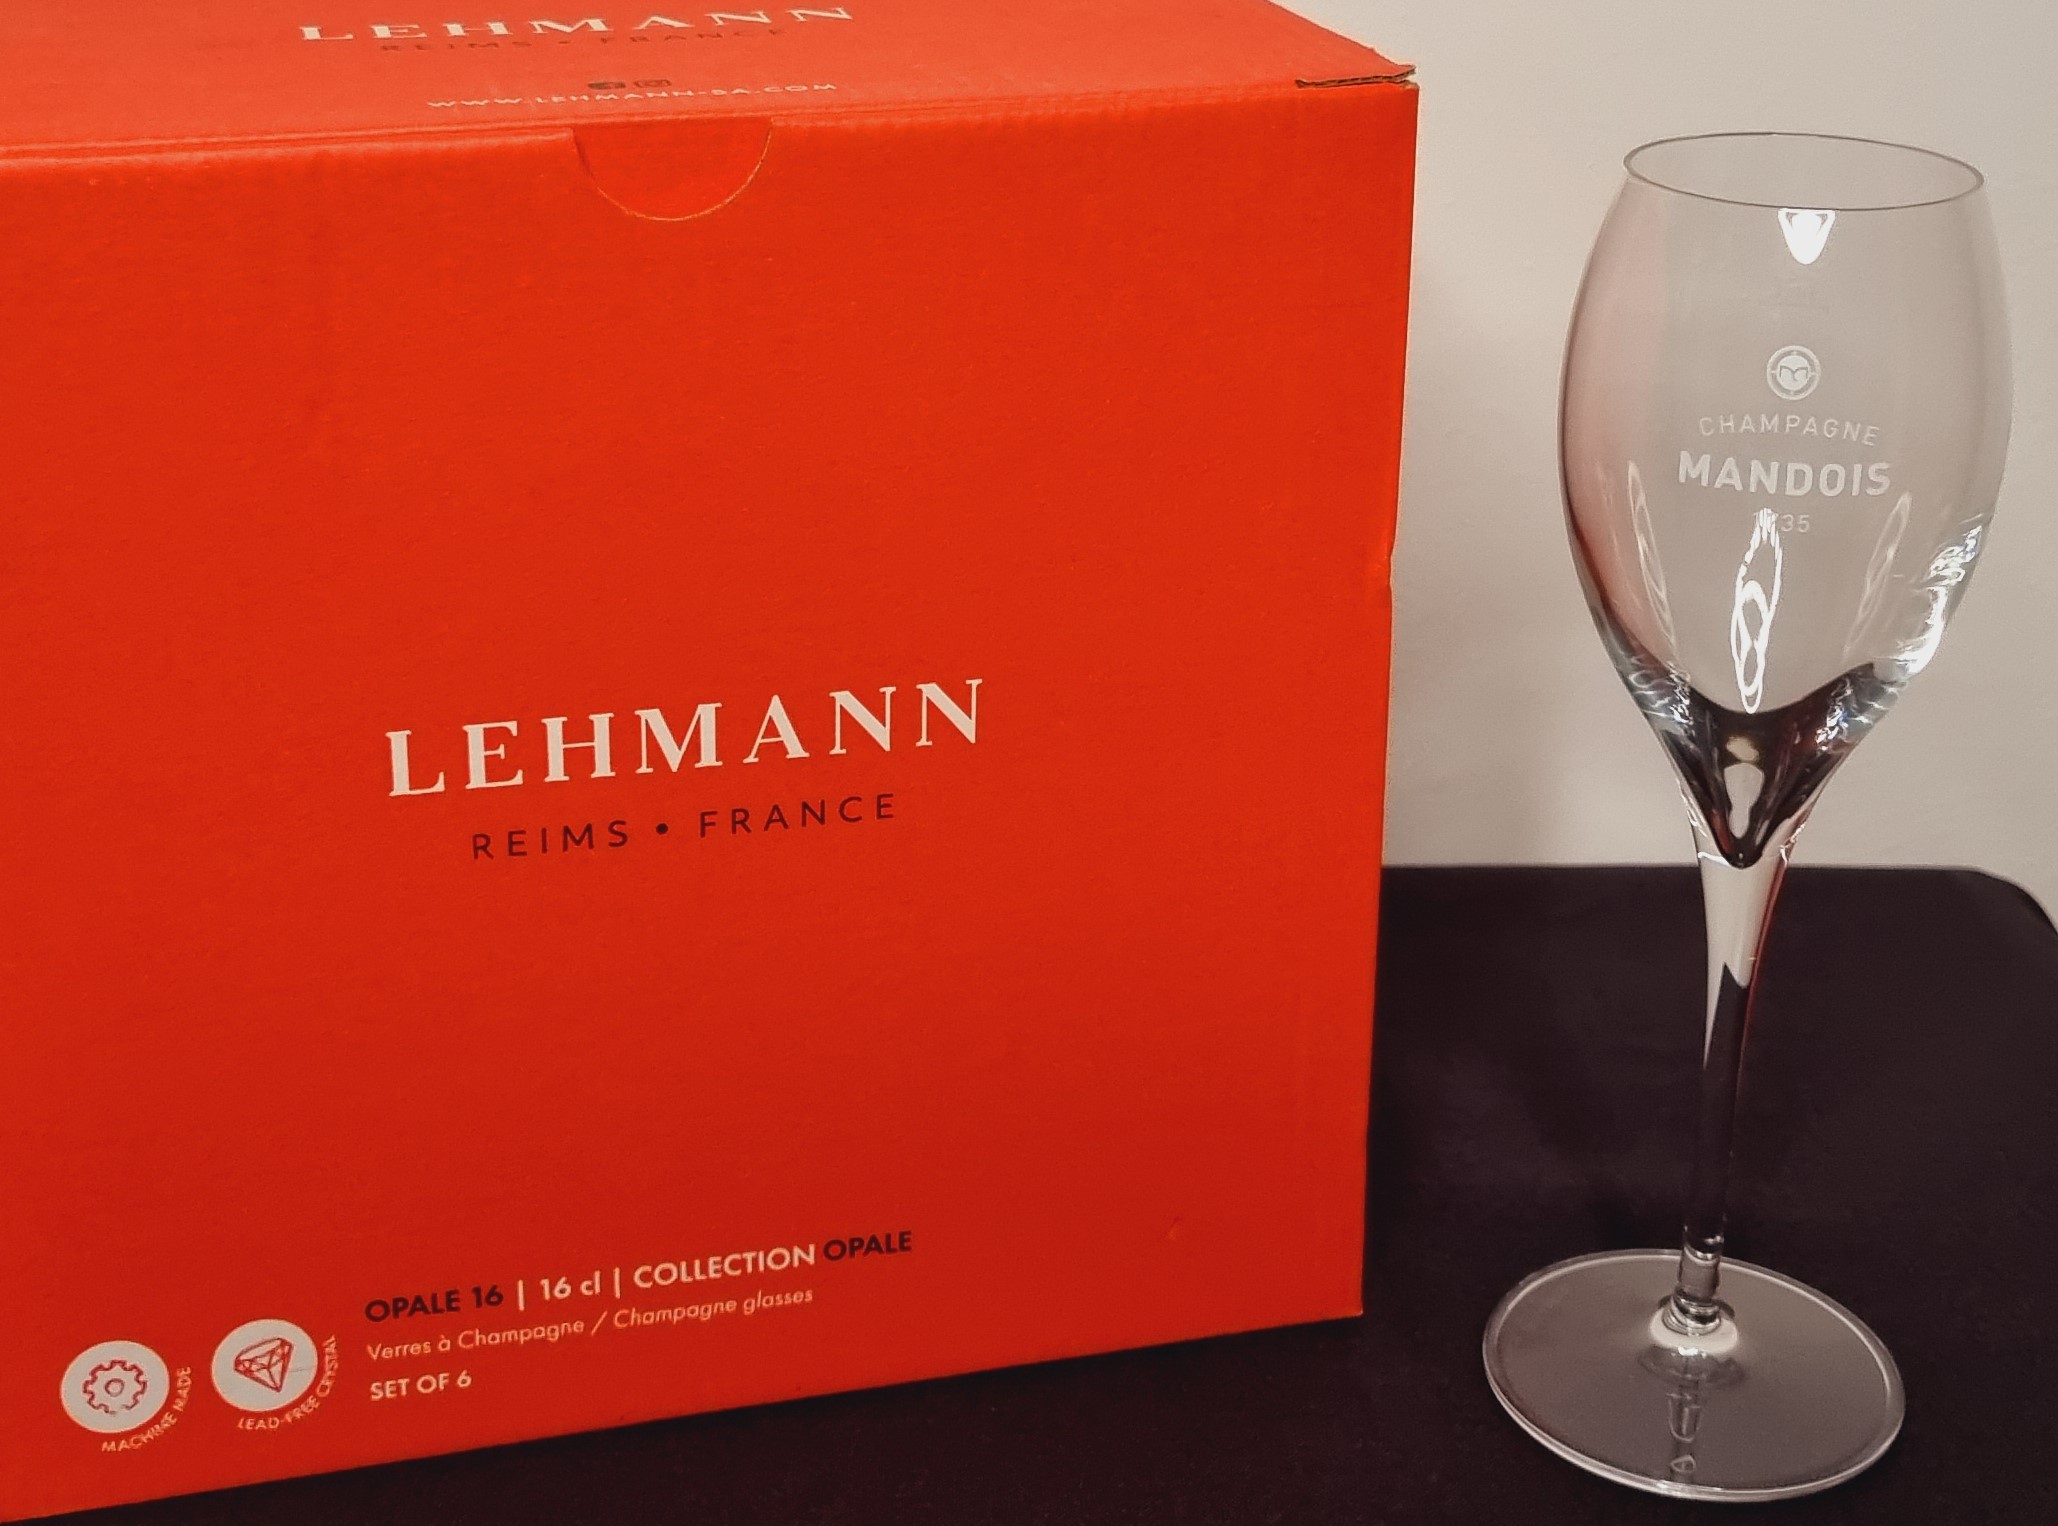 16 cl-es Lehmann pohárkészlet a Champagne Mandois számára – 22.500.-Ft